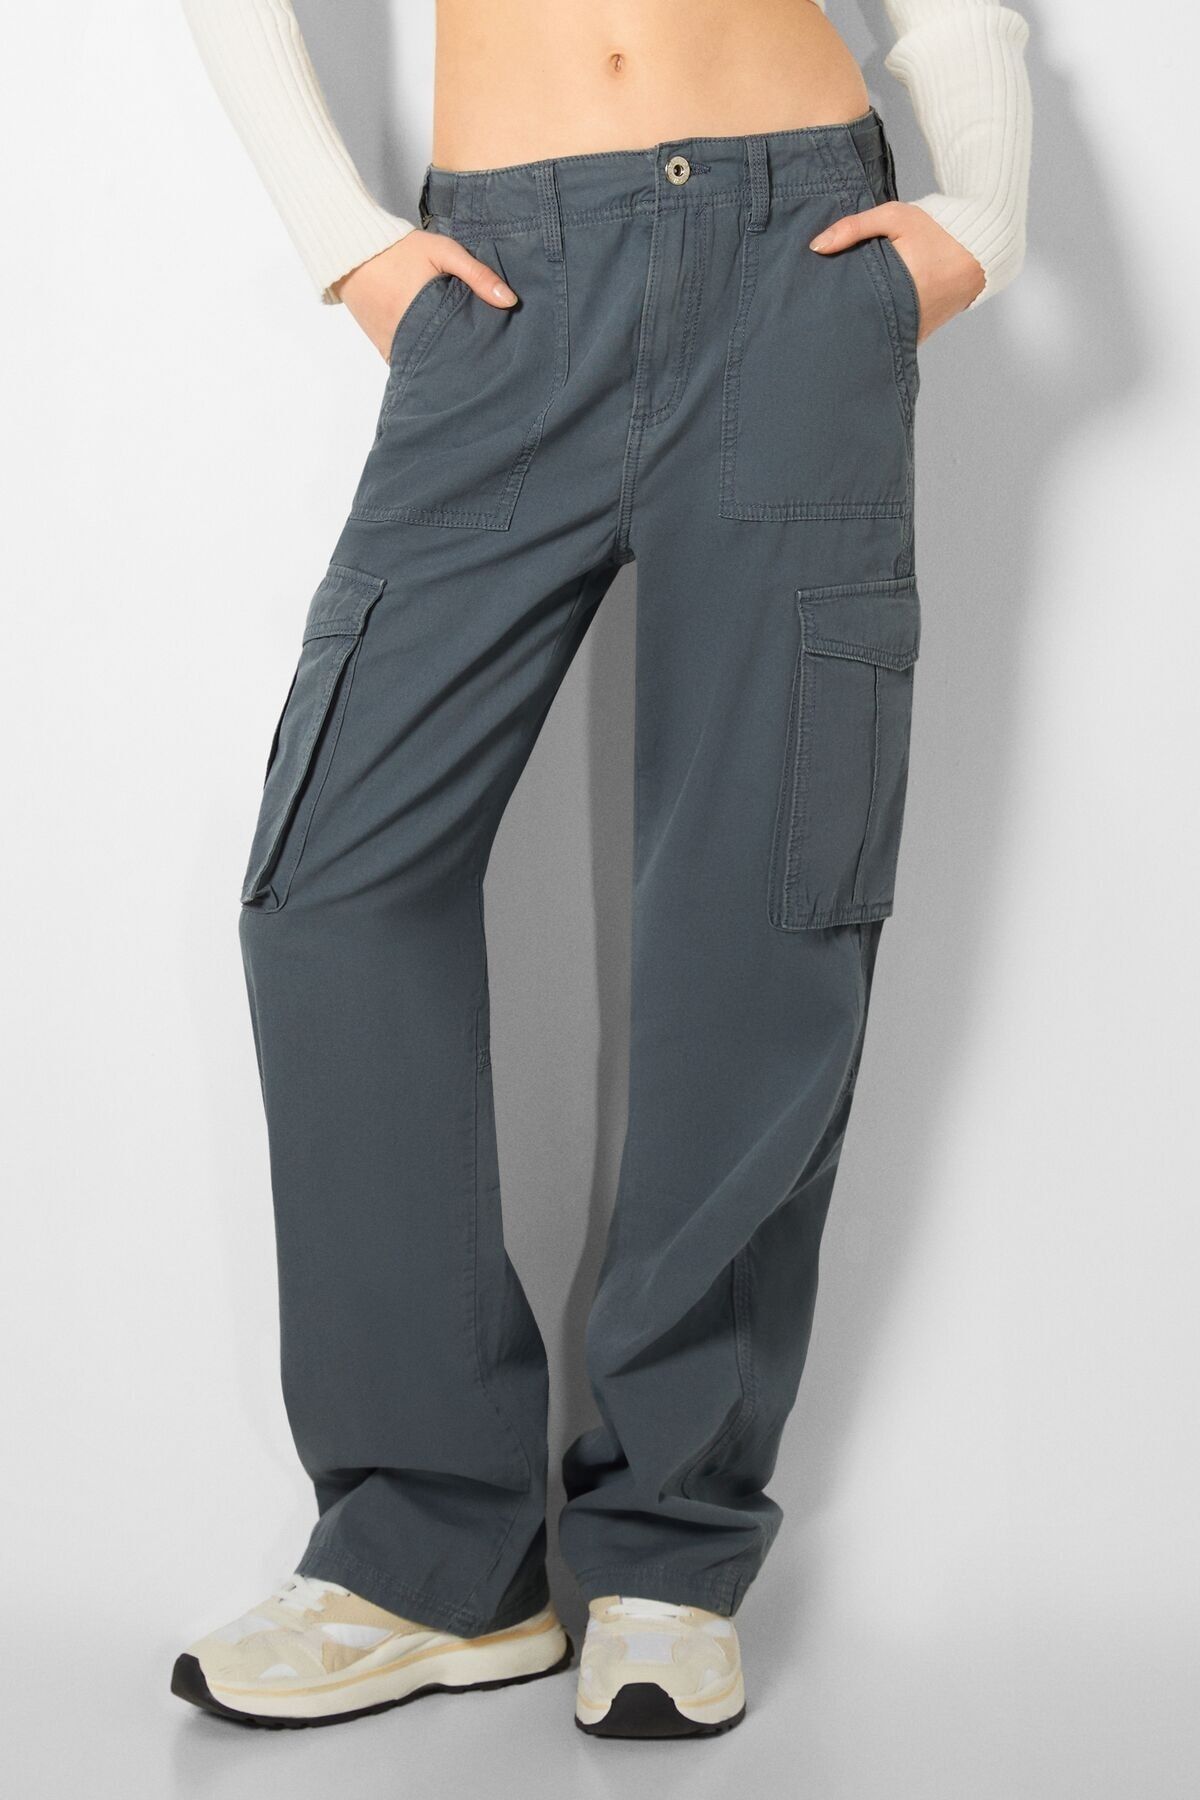 شلوار جین مدل باربری طرح جیب پاکتی زیپ دار زنانه برشکا Bershka (برند اسپانیا)